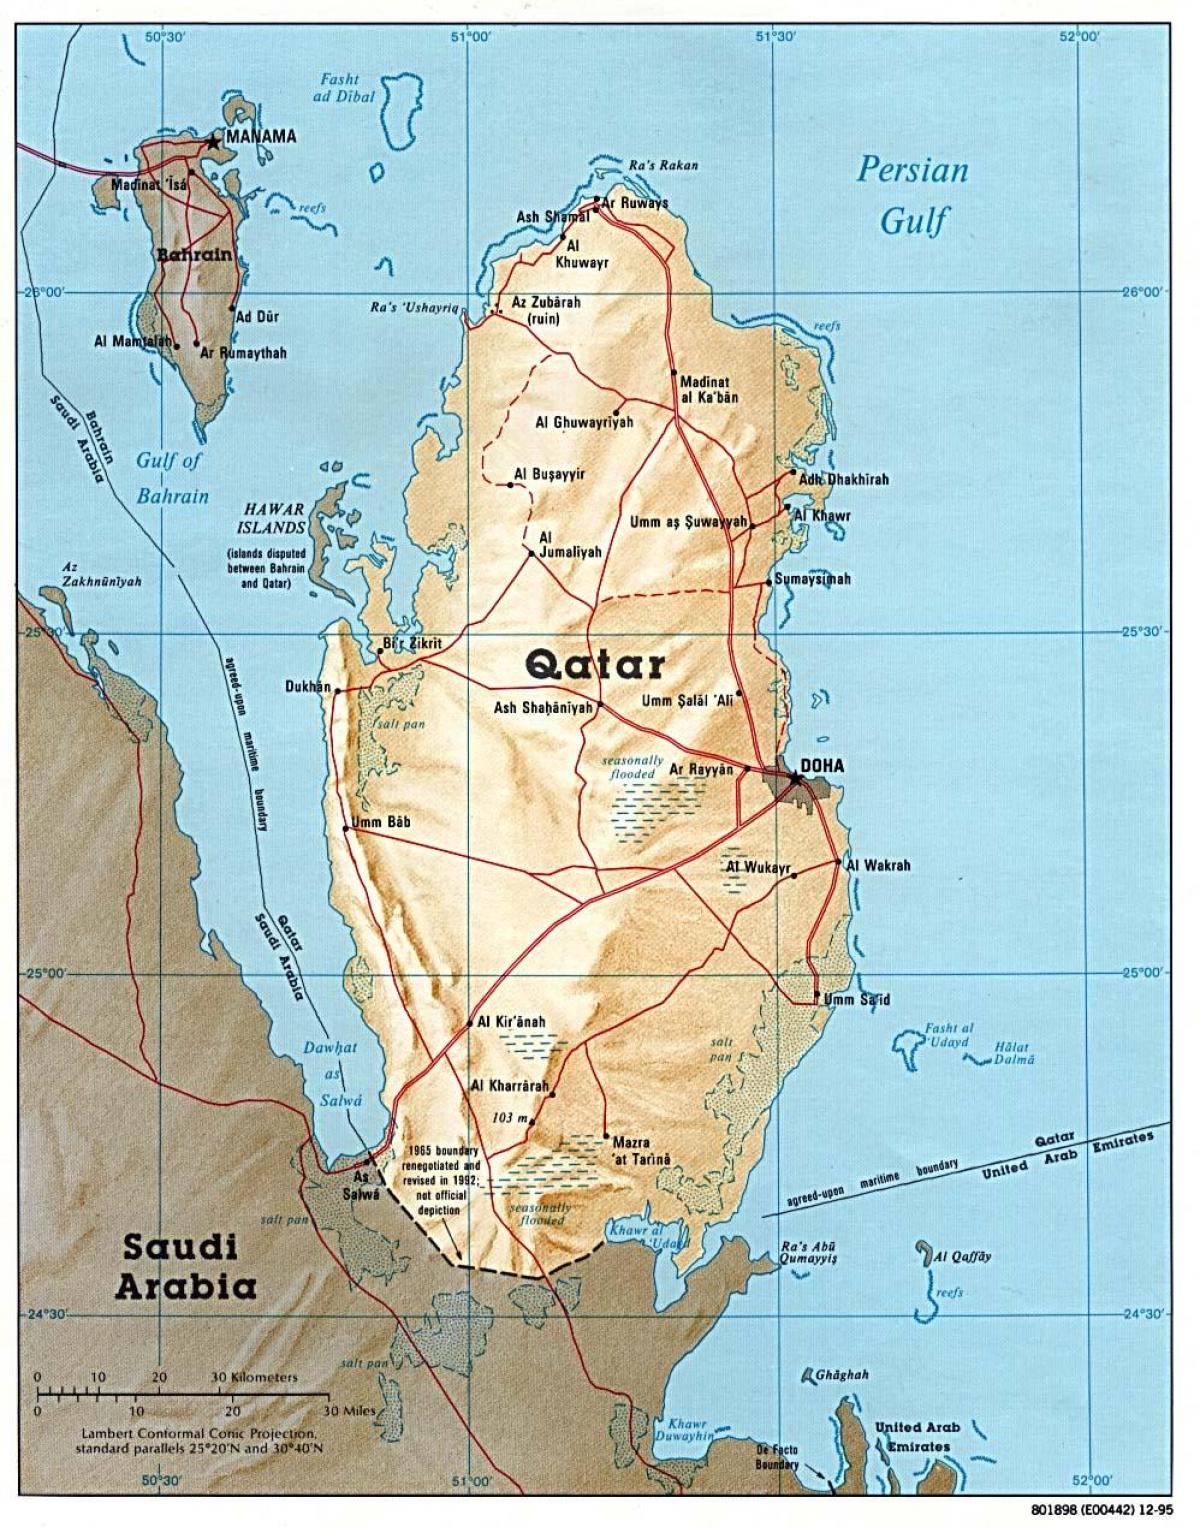 katar térkép Katar road map   Térkép katar út (Nyugat Ázsia   Asia) katar térkép